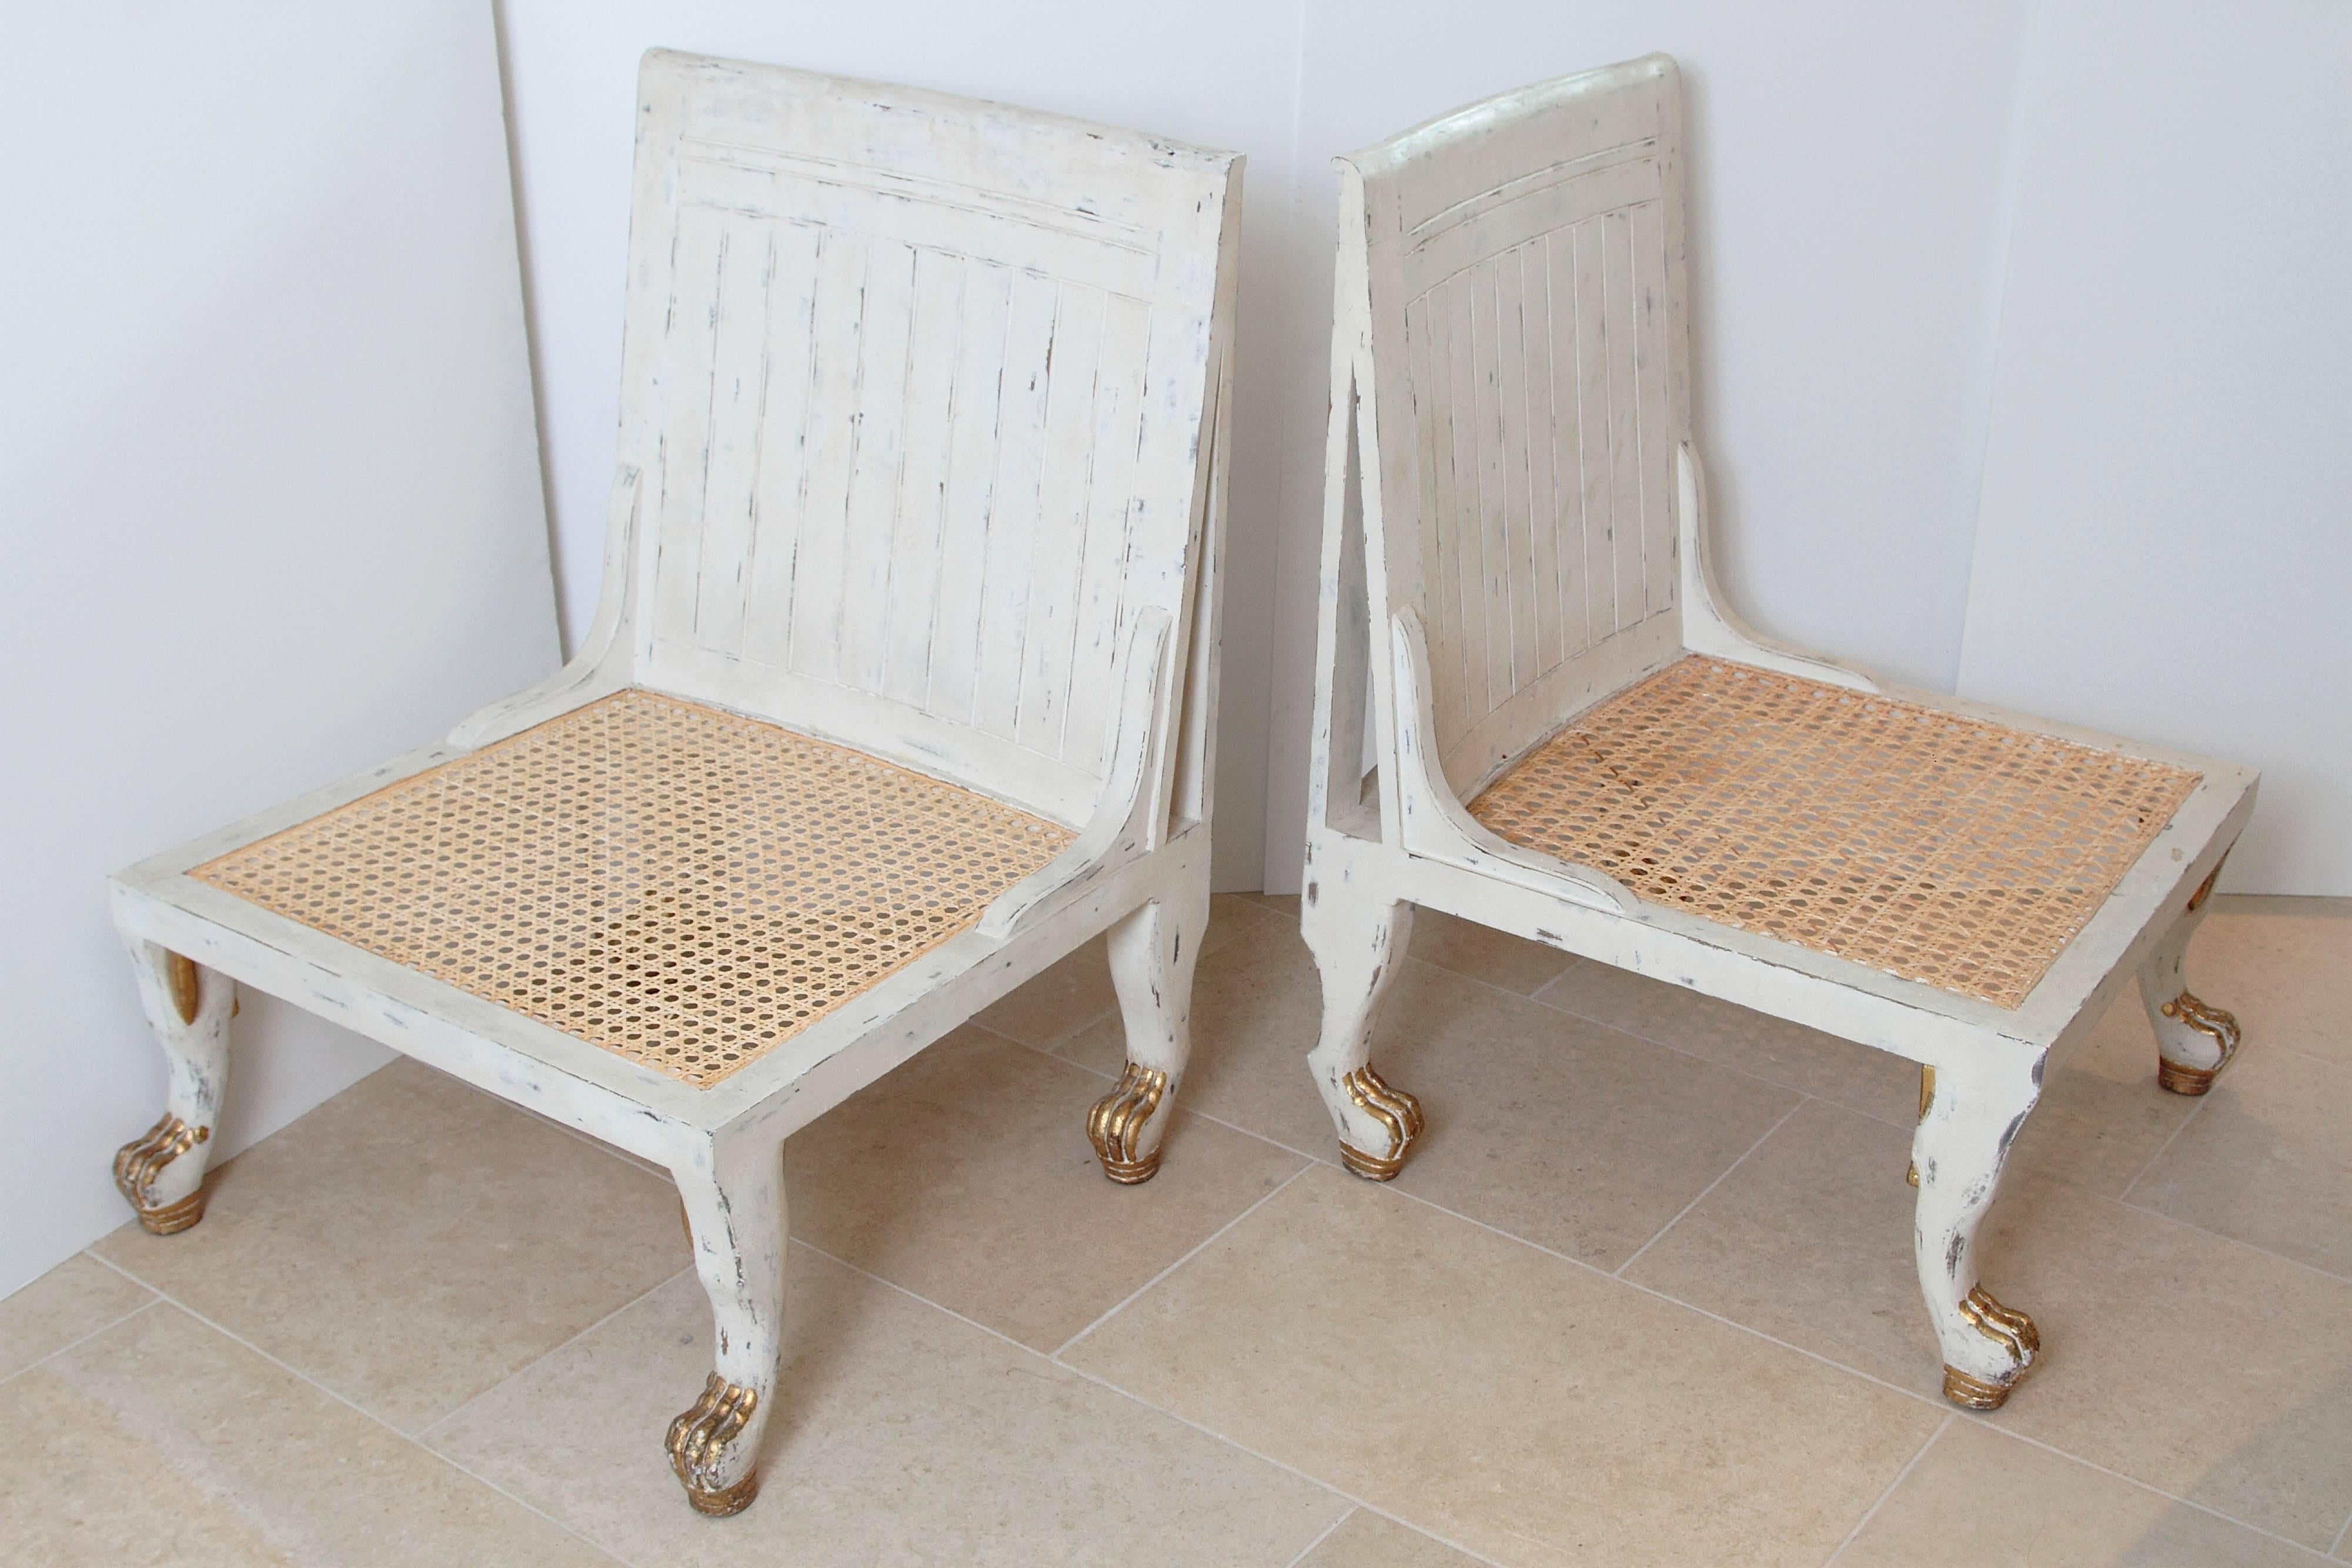 Ein Paar weiß lackierte und paketvergoldete Theben-Stühle im ägyptischen Stil.

Sie ruhen auf geschnitzten Tatzenfüßen mit geriffelten Sitzen.

Ende des 20. Jahrhunderts.

Ein wunderschönes Paar!